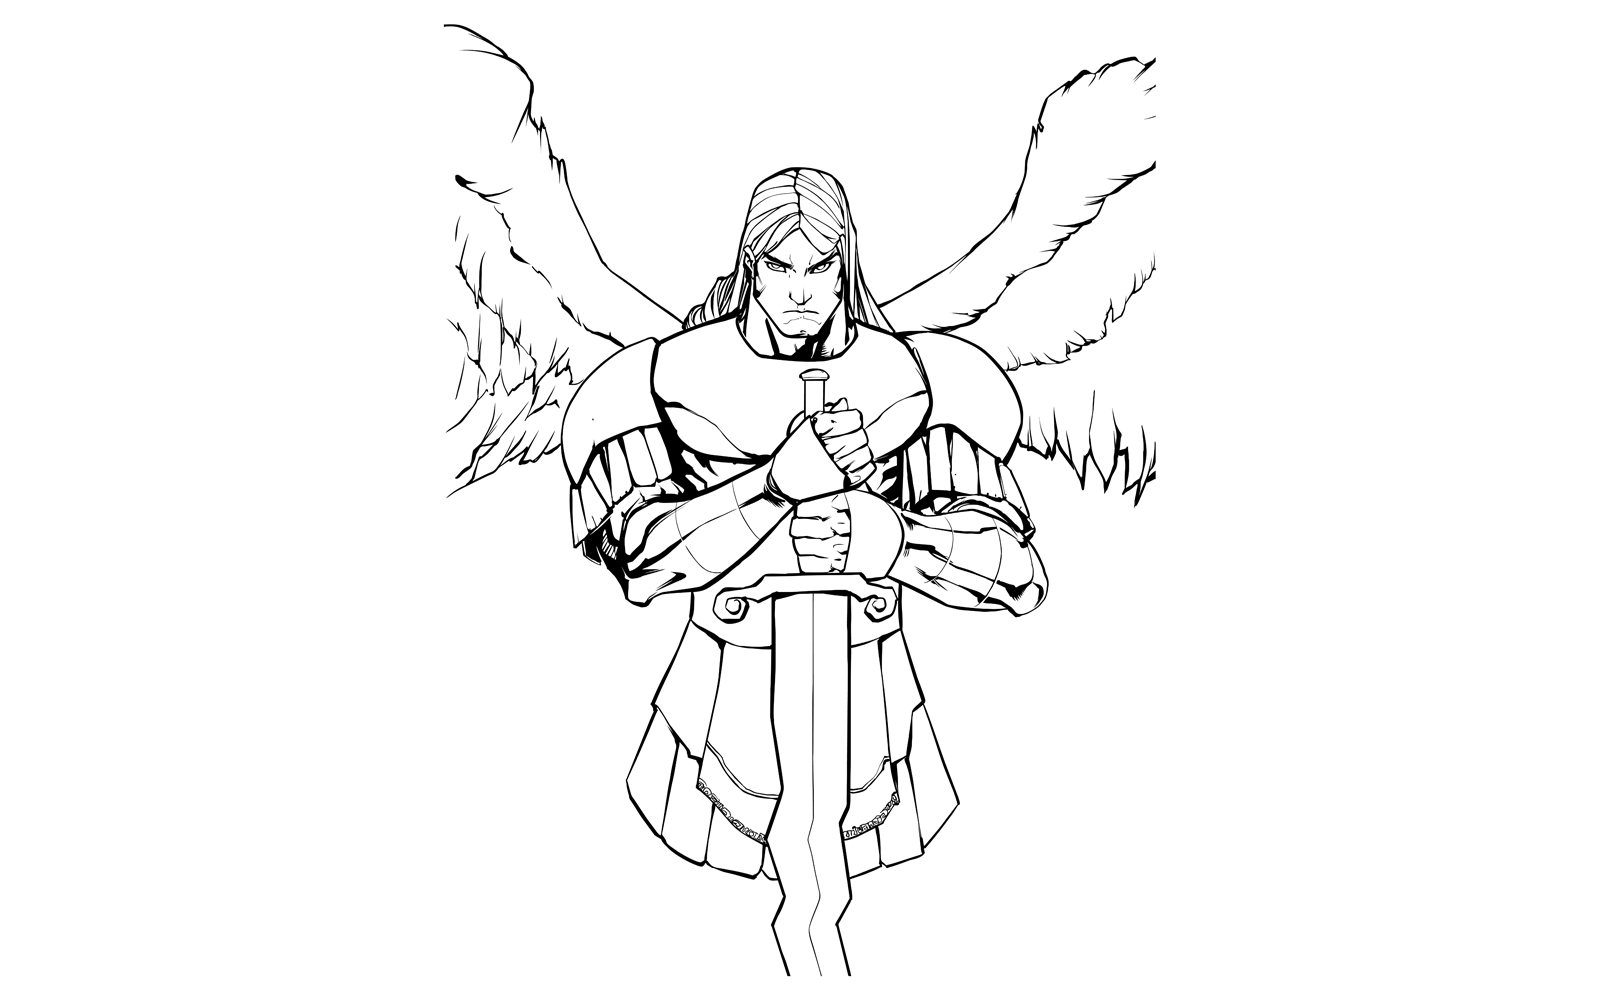 Archangel Michael Portrait Line Art - Illustration